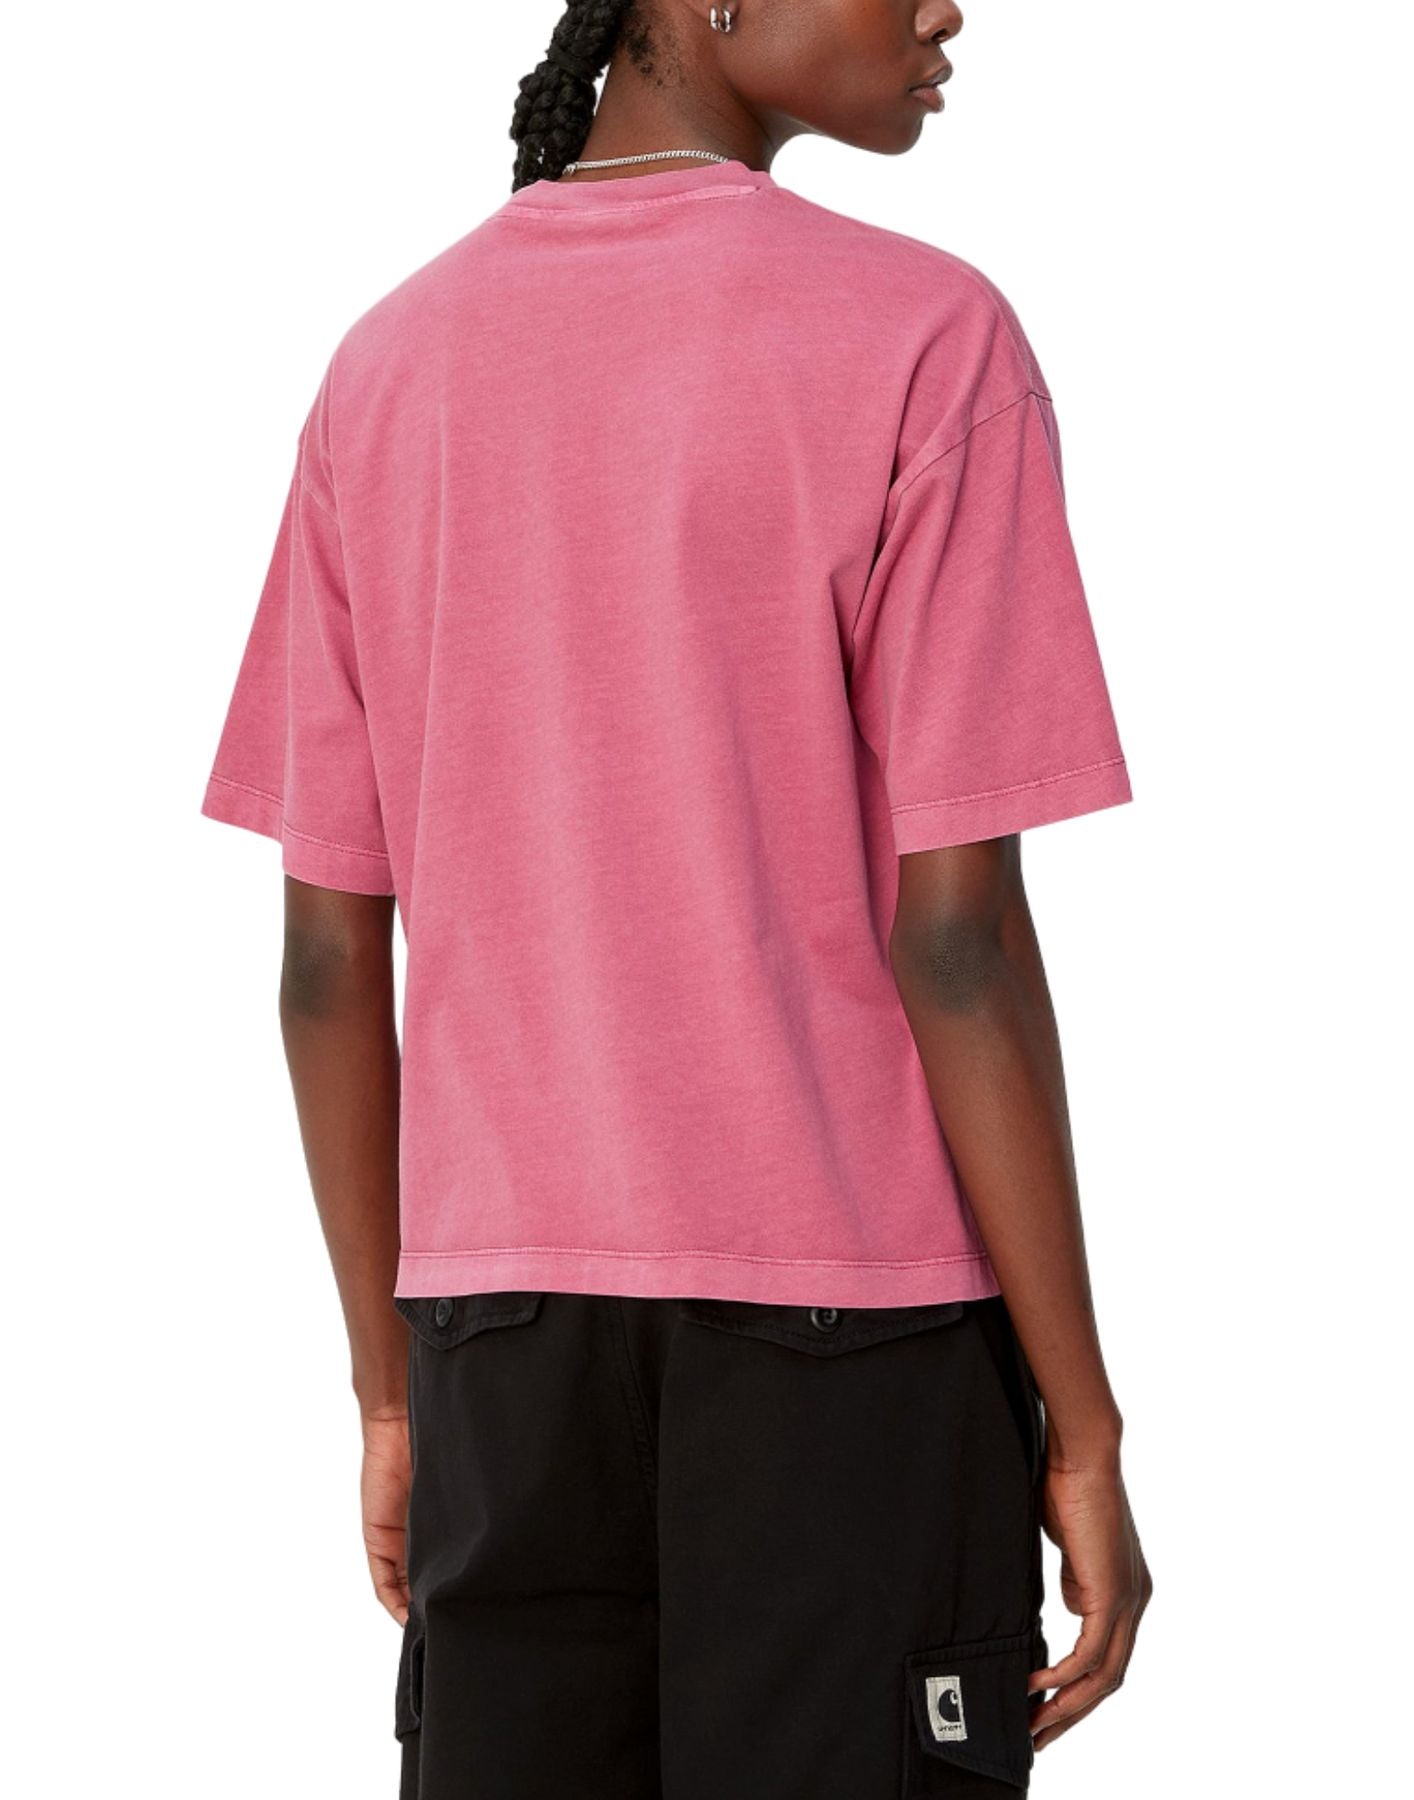 Camiseta mujer i033051 1yt.gd rosa carhartt wip